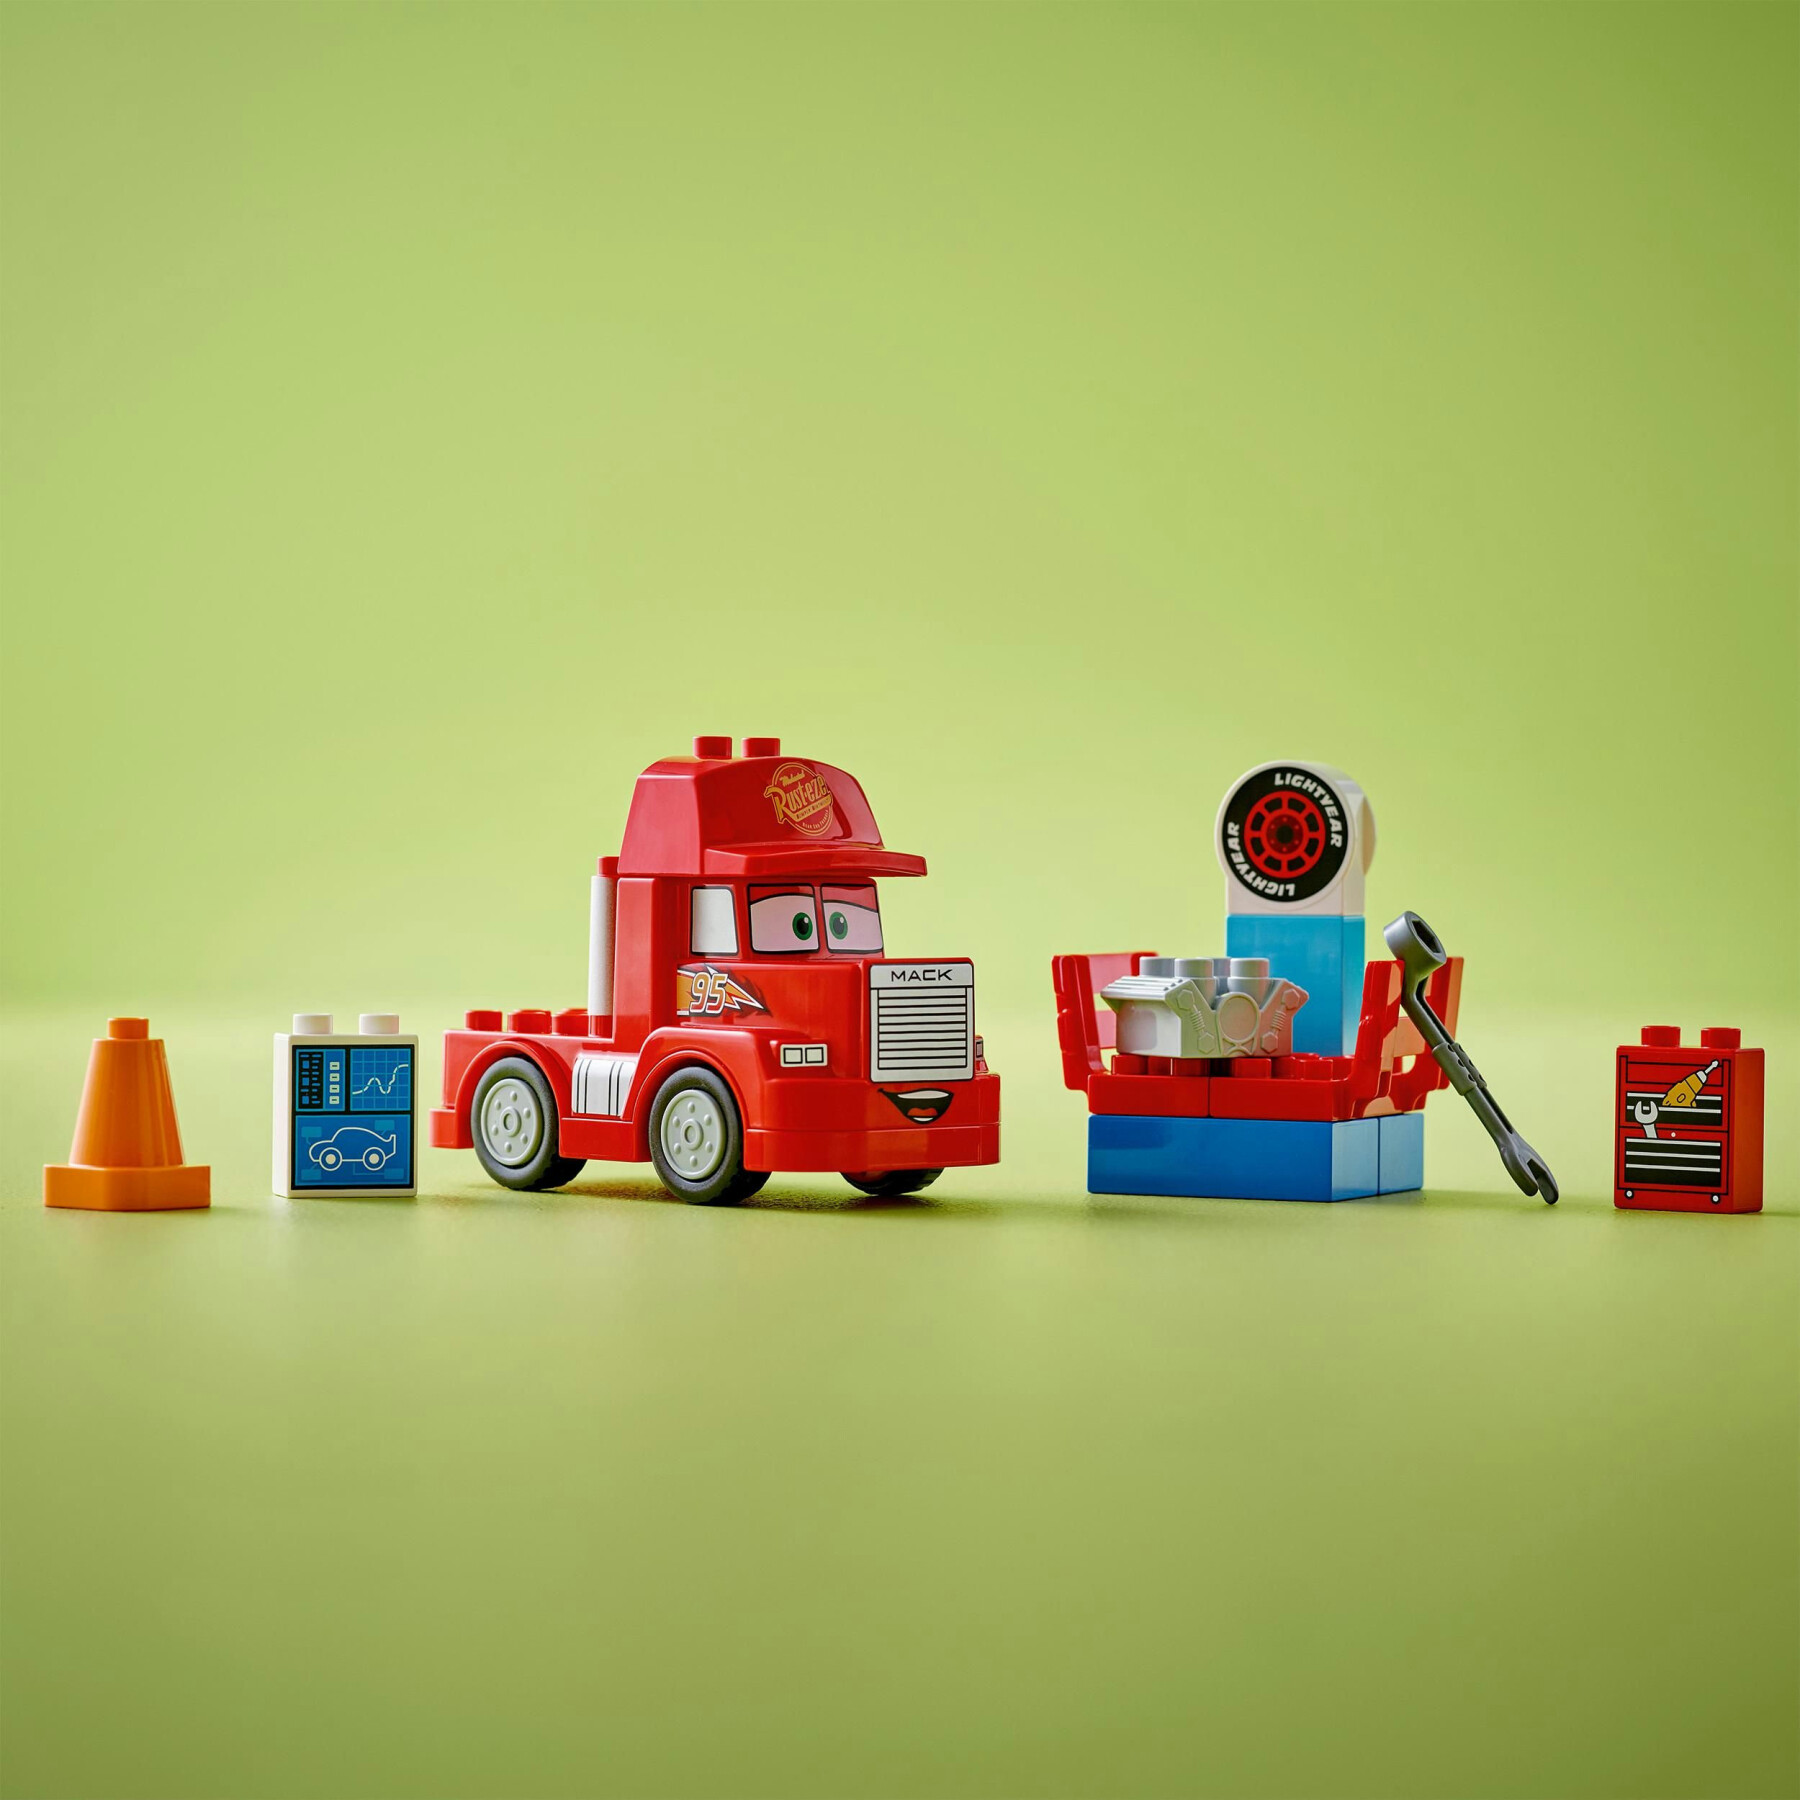 Lego lego duplo disney e pixar 10417 mack al circuito, giochi per bambini di 2+ anni con camion giocattolo rosso da costruire - LEGO DUPLO